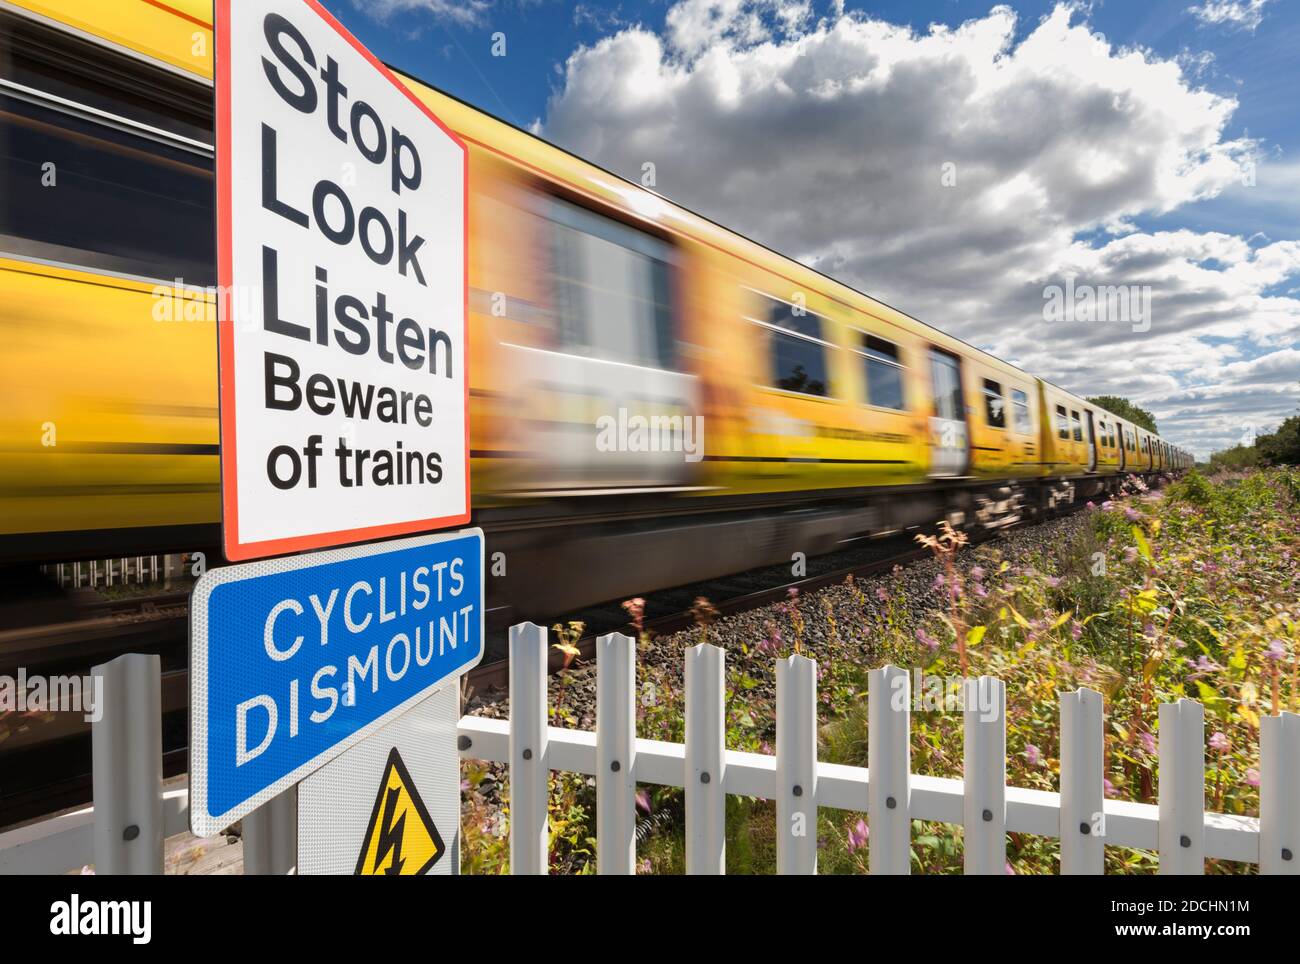 Merseyrail Zug vorbei an einem öffentlichen Fußgängerübergang mit Geschwindigkeit Bewegungsunschärfe mit dem Stop-Look-Listen-Warnschild und Radfahrer demontieren Schild Stockfoto